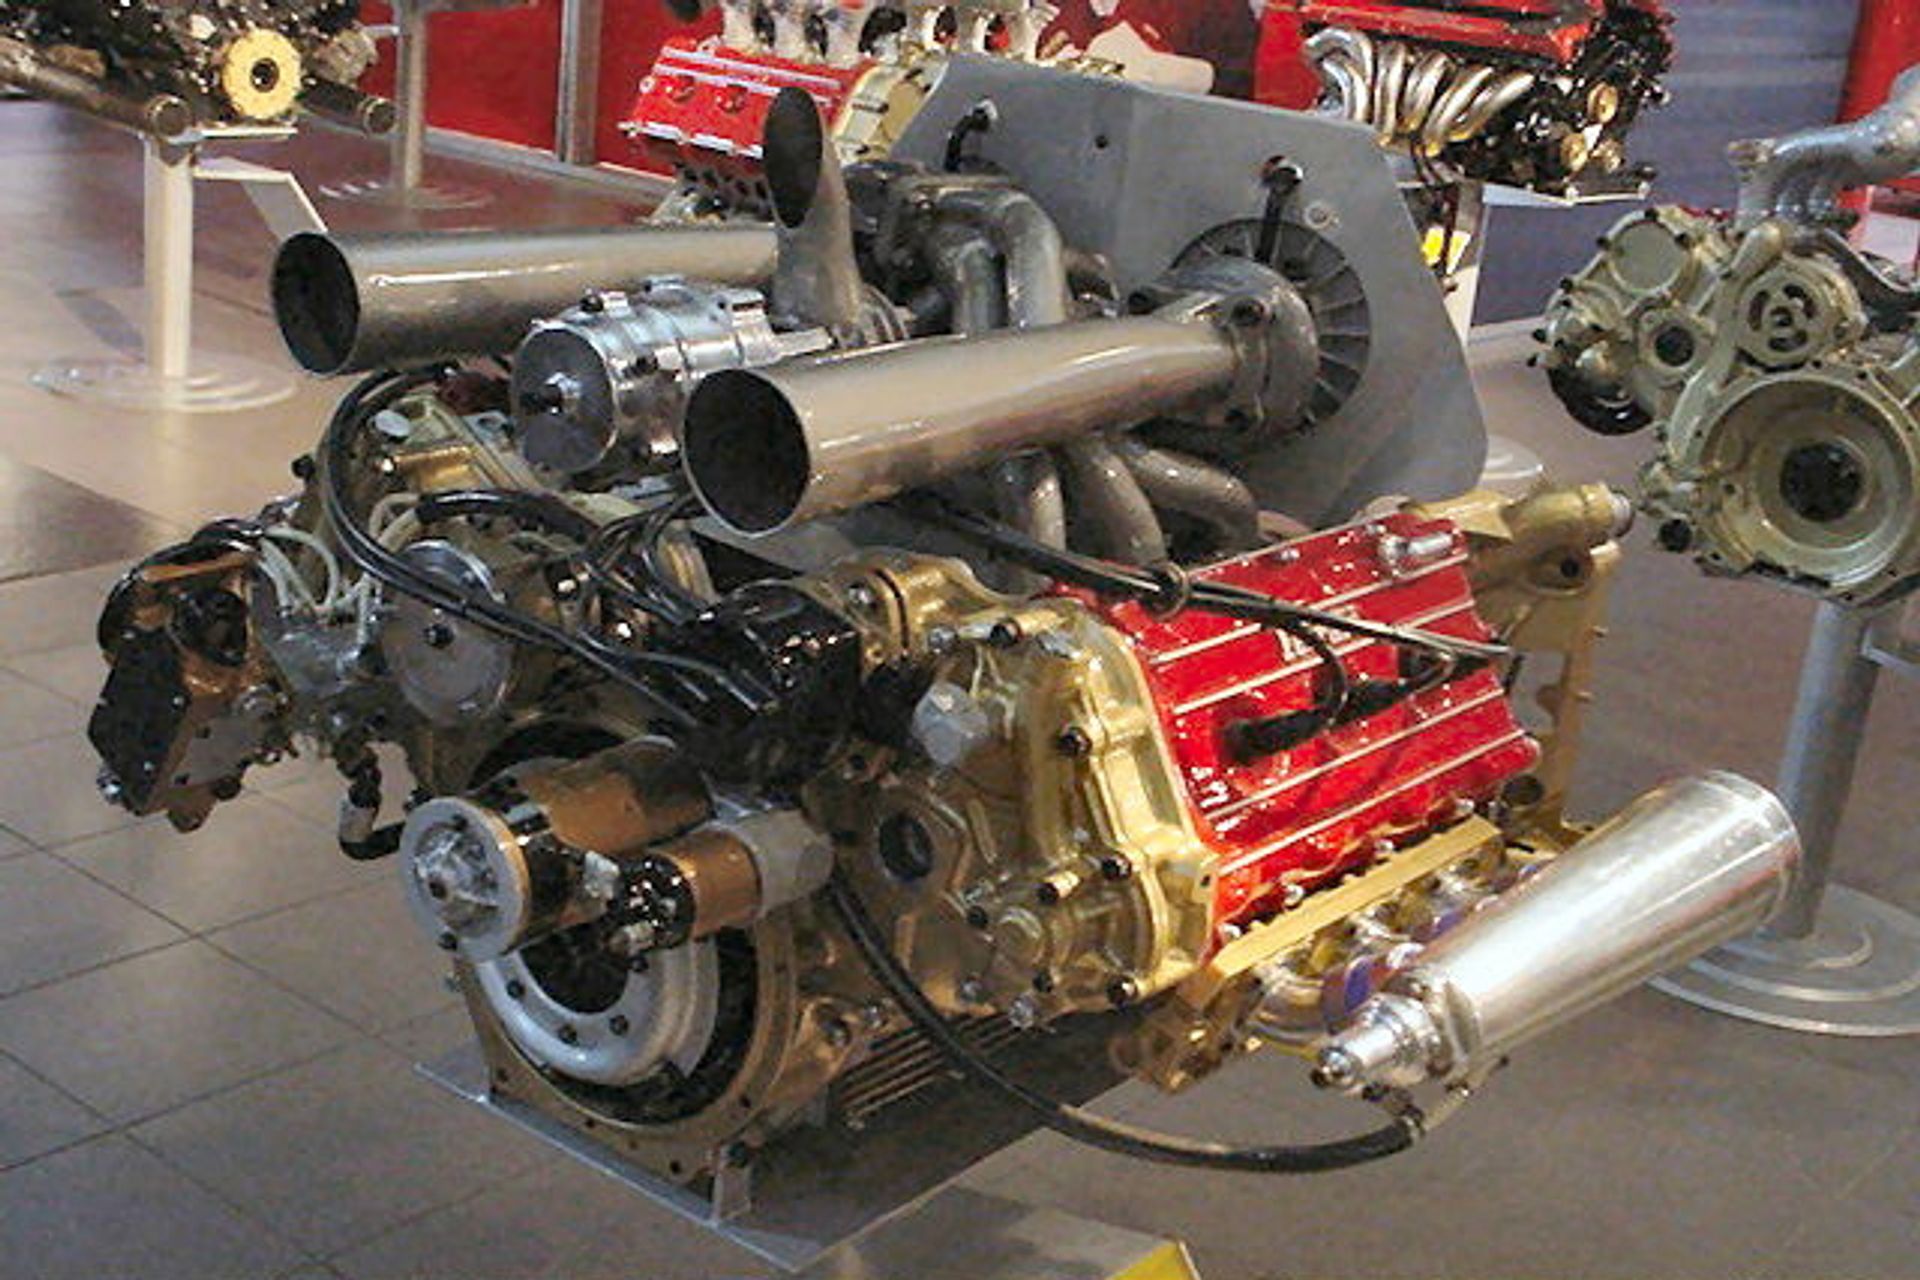 Il motore 021 della Ferrari usato in Formula 1 nel 1981 e dotato a Long Beach in prova di un Comprex in luogo di un comune turbo